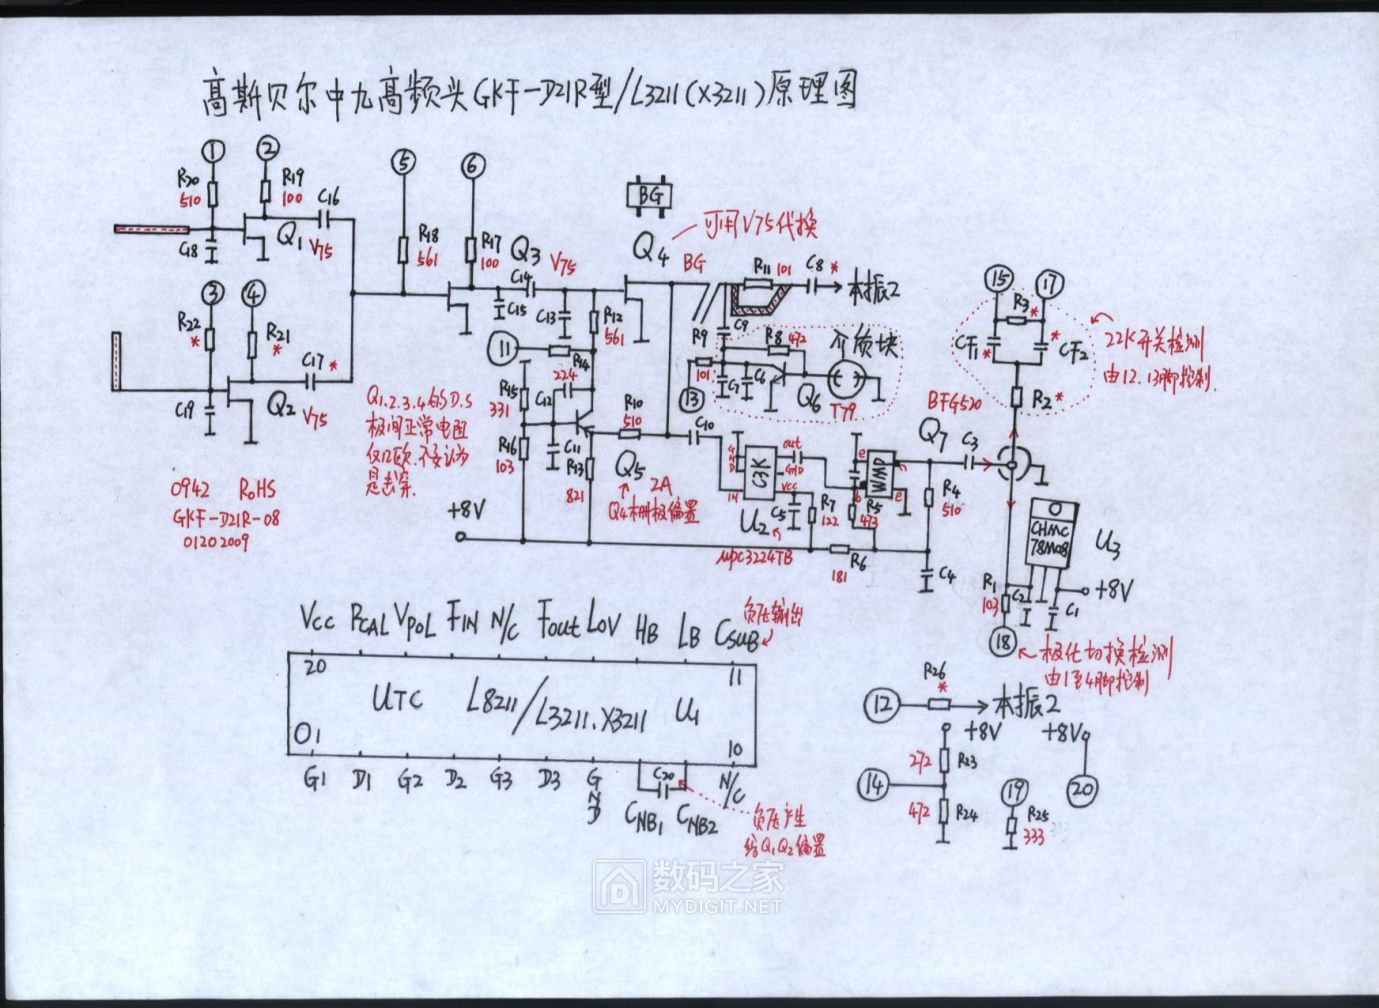 高斯贝尔GKF-D21R型L3211 X3211芯片中九高频头原理图.jpg